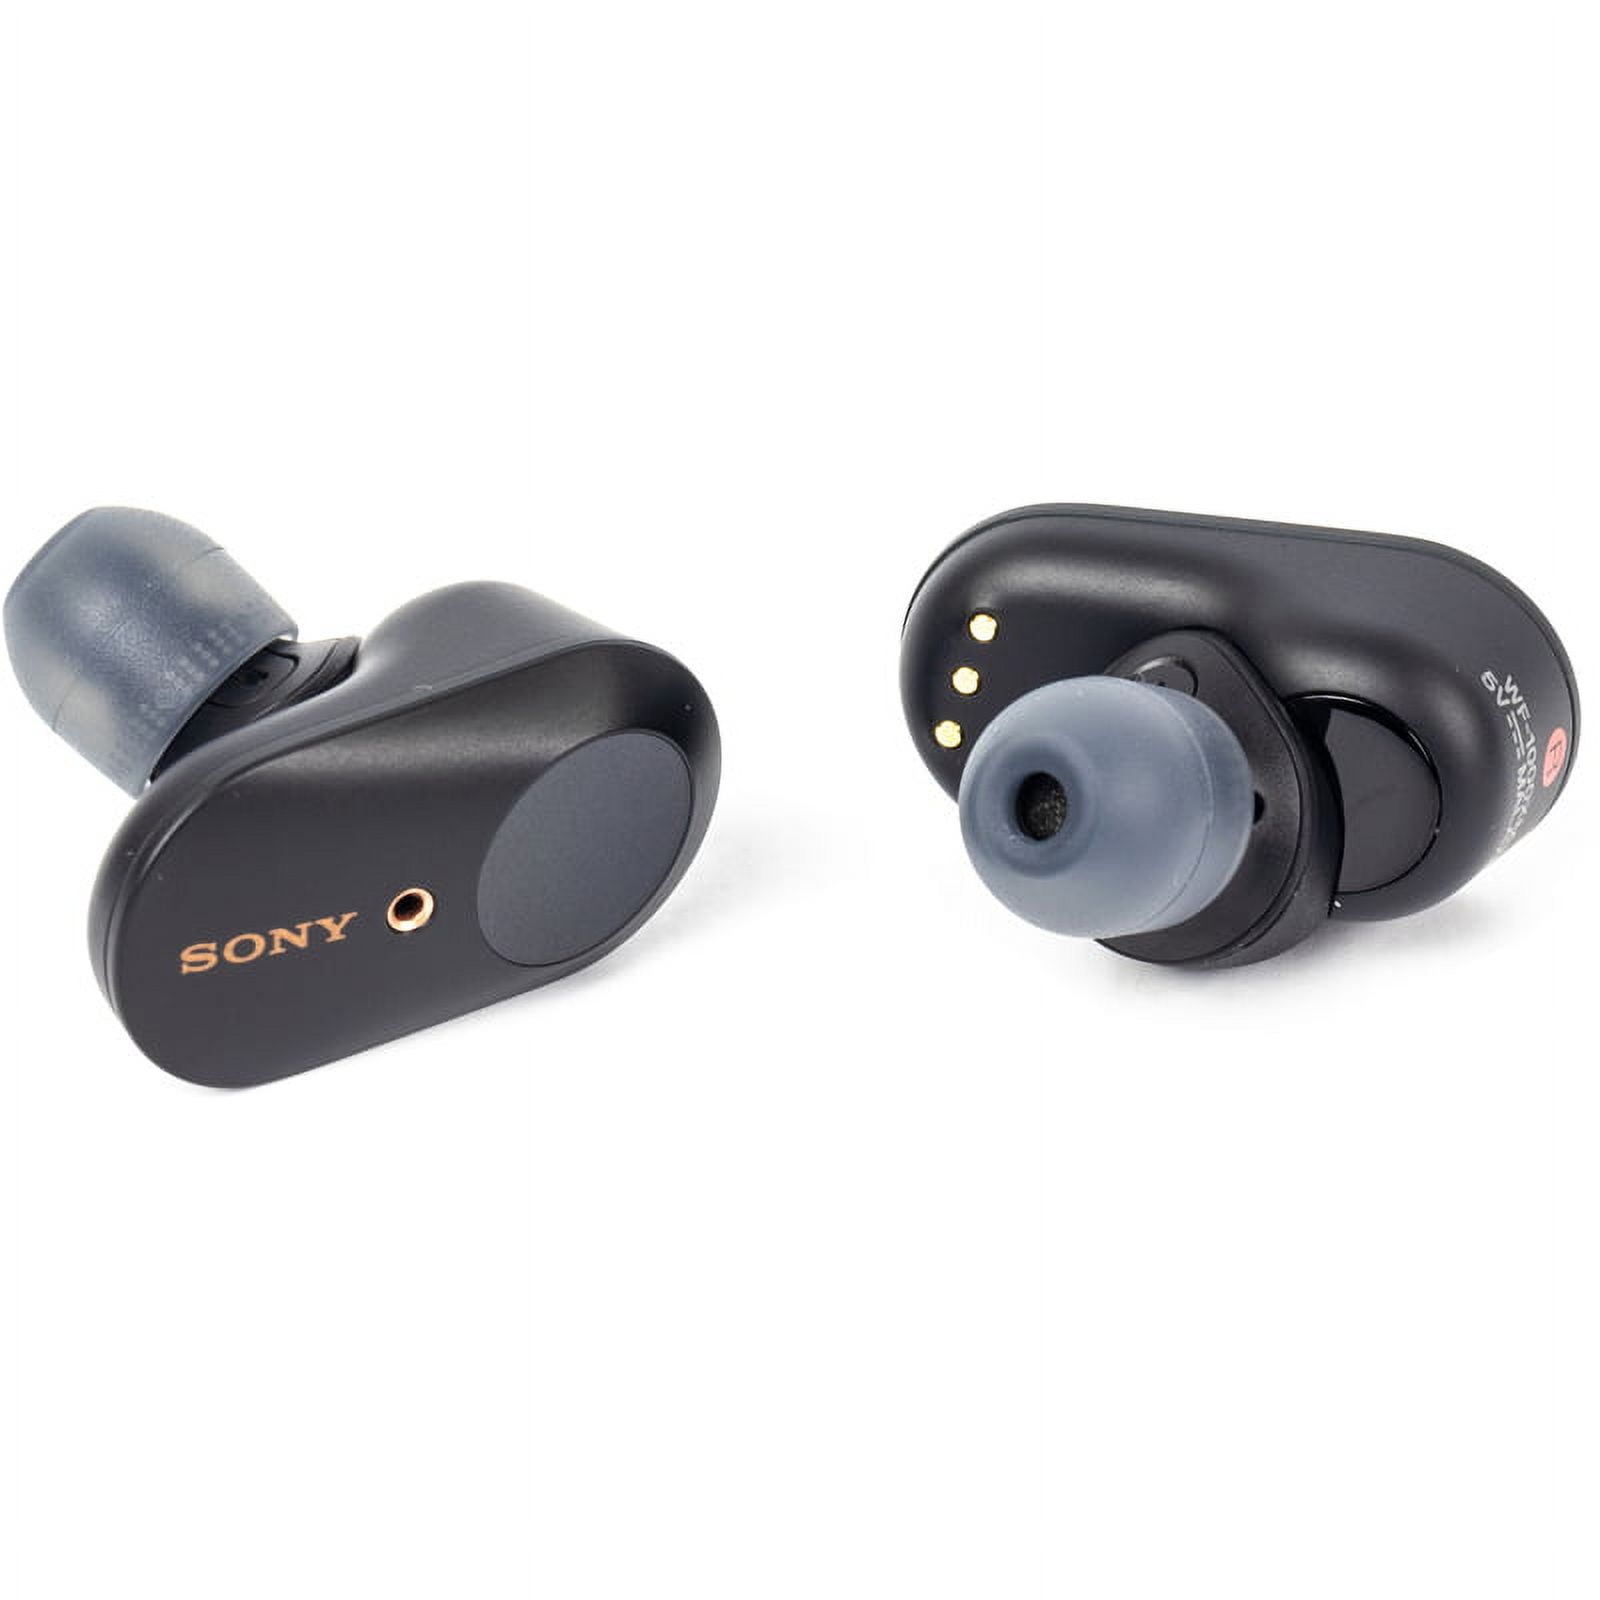 Sony WF-1000XM3 True Wireless Noise-Canceling In-Ear